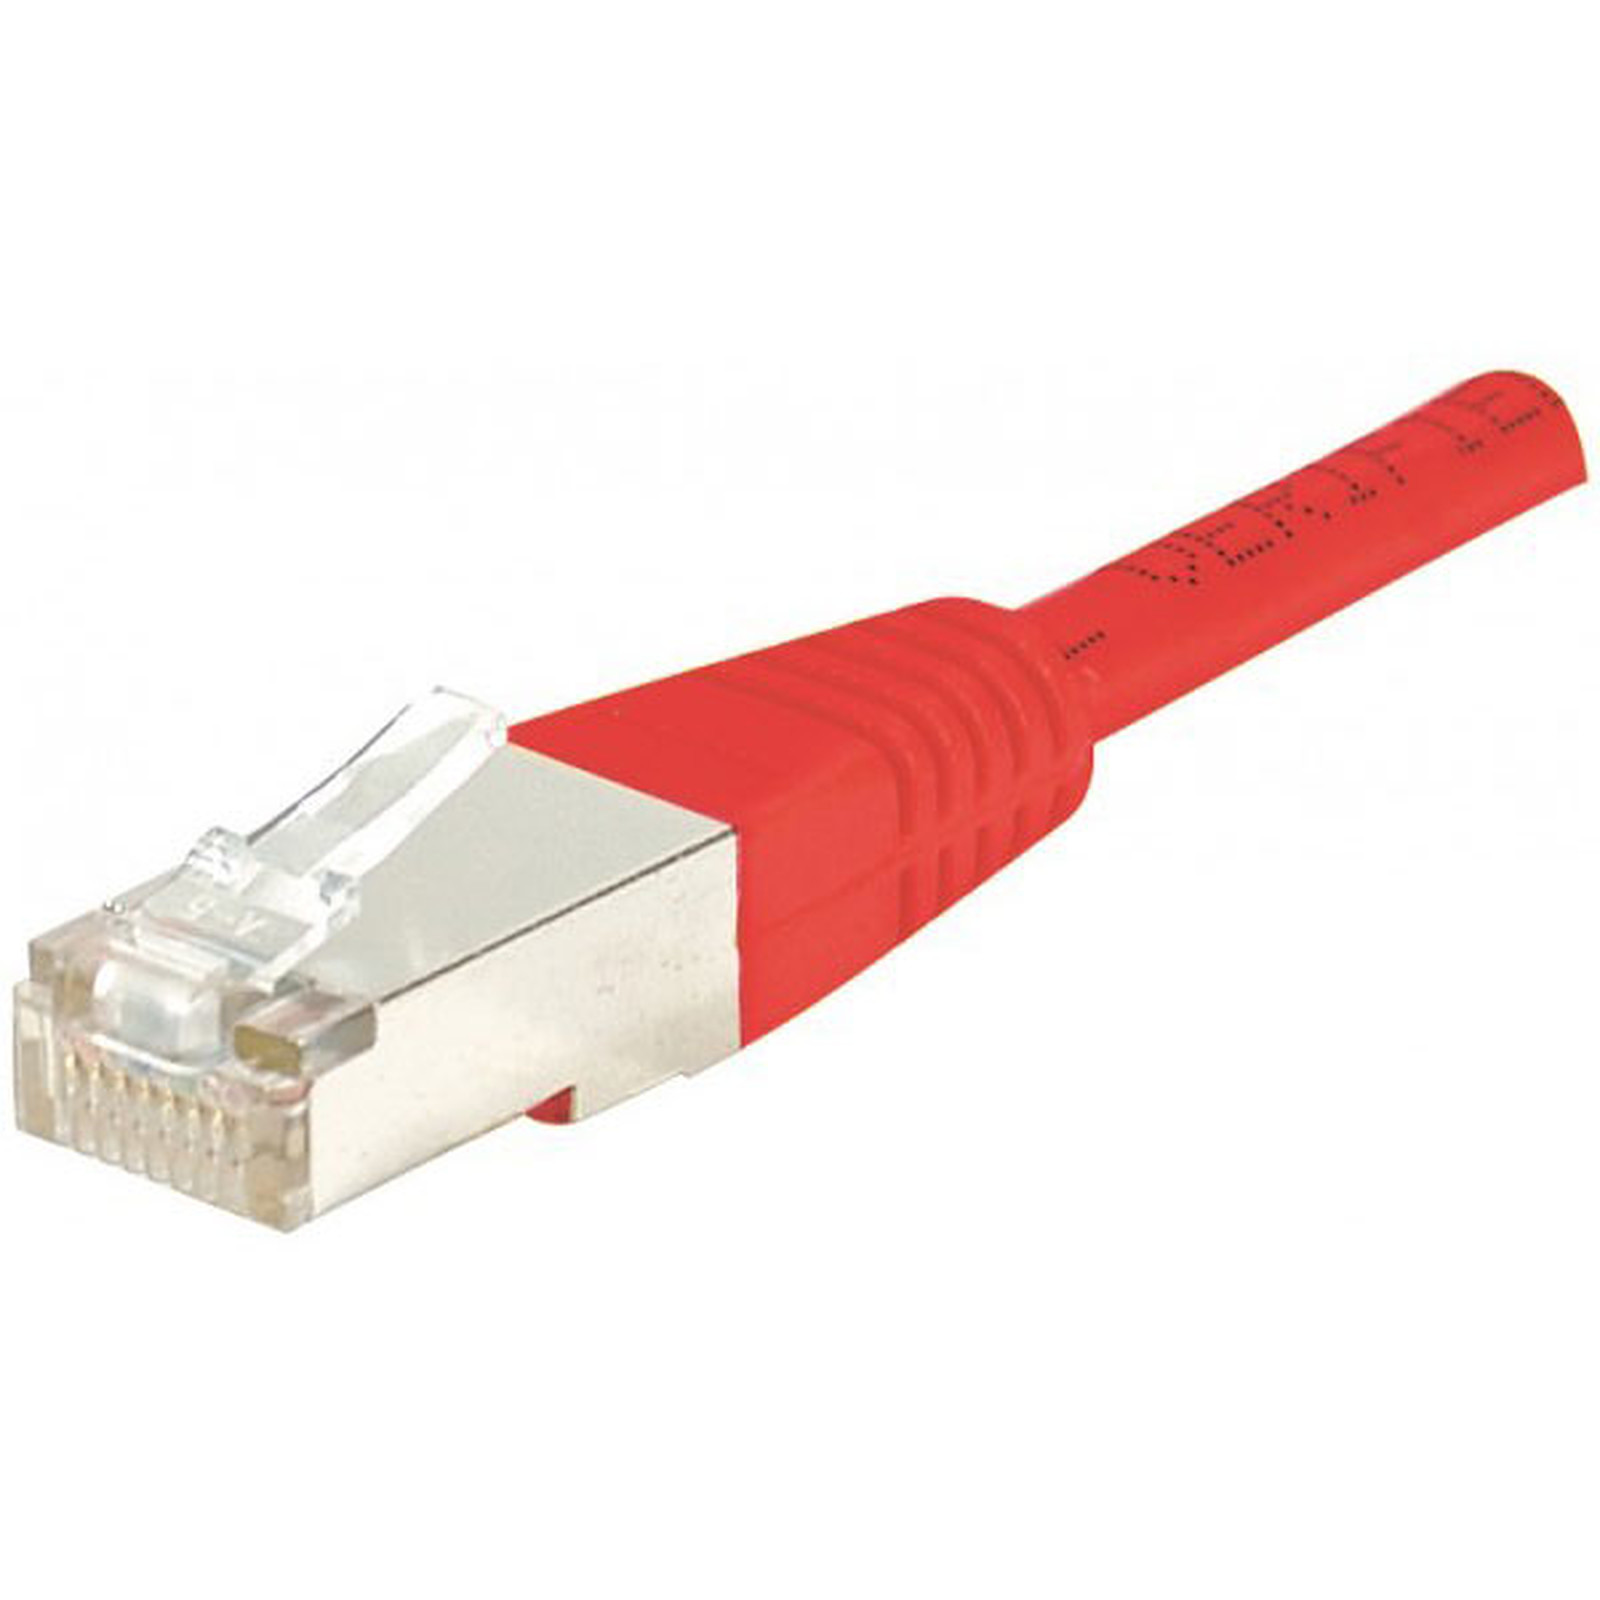 Cable RJ45 categorie 5e F/UTP 0,3 m (Rouge) - Cable RJ45 Generique